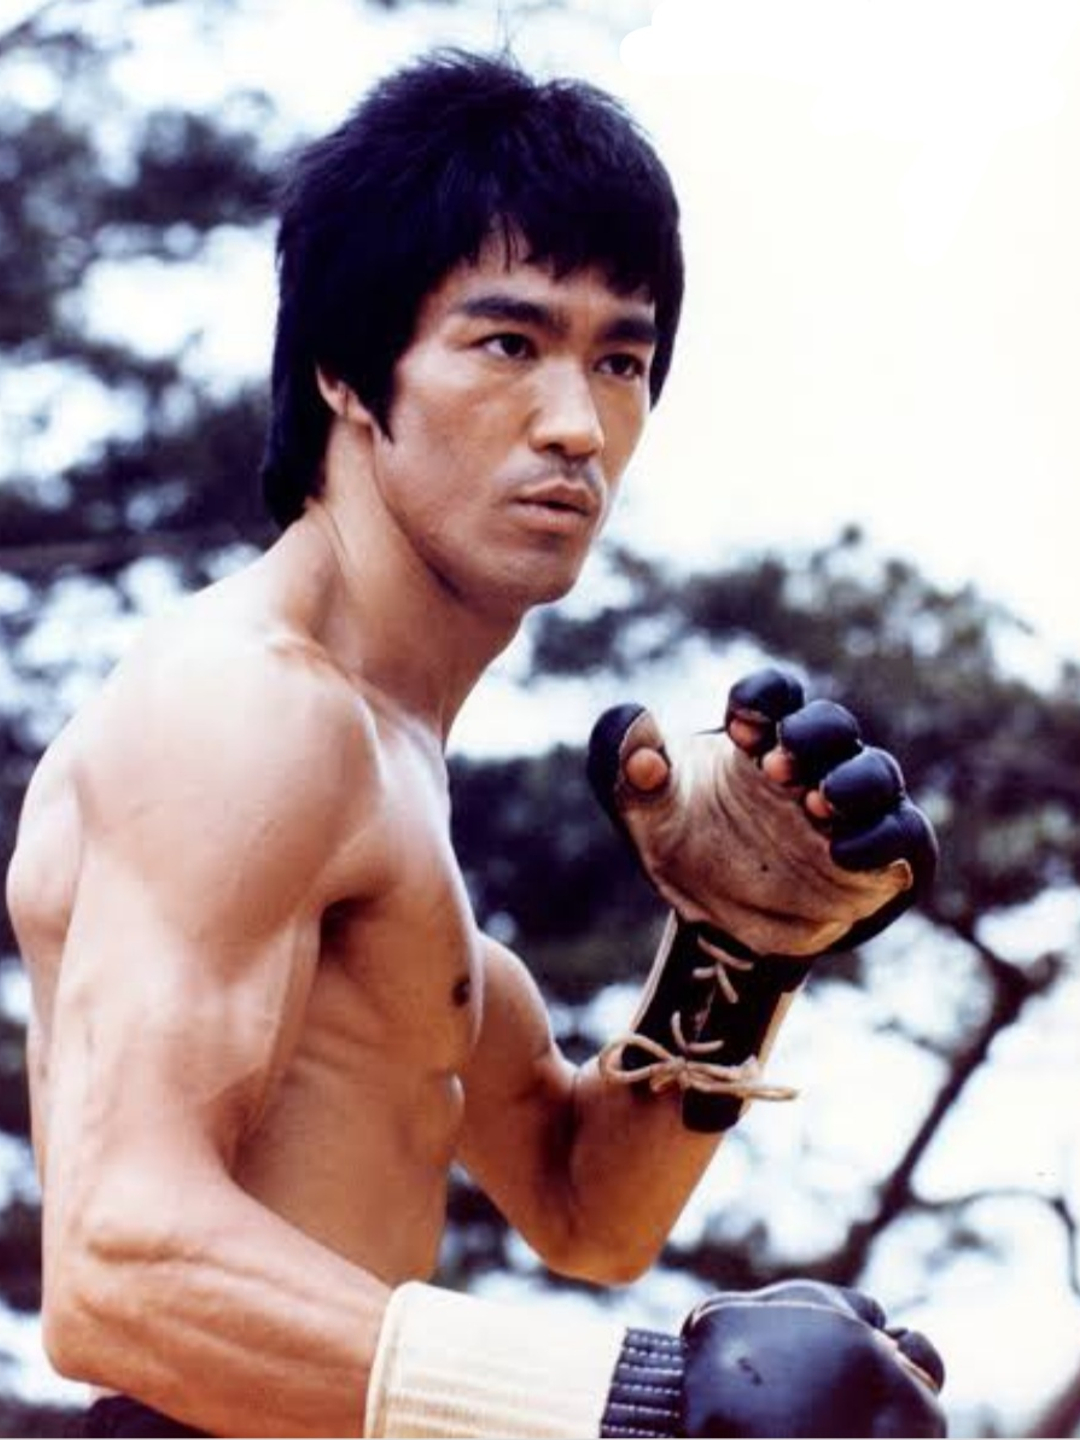 Bruce Lee childhood pics